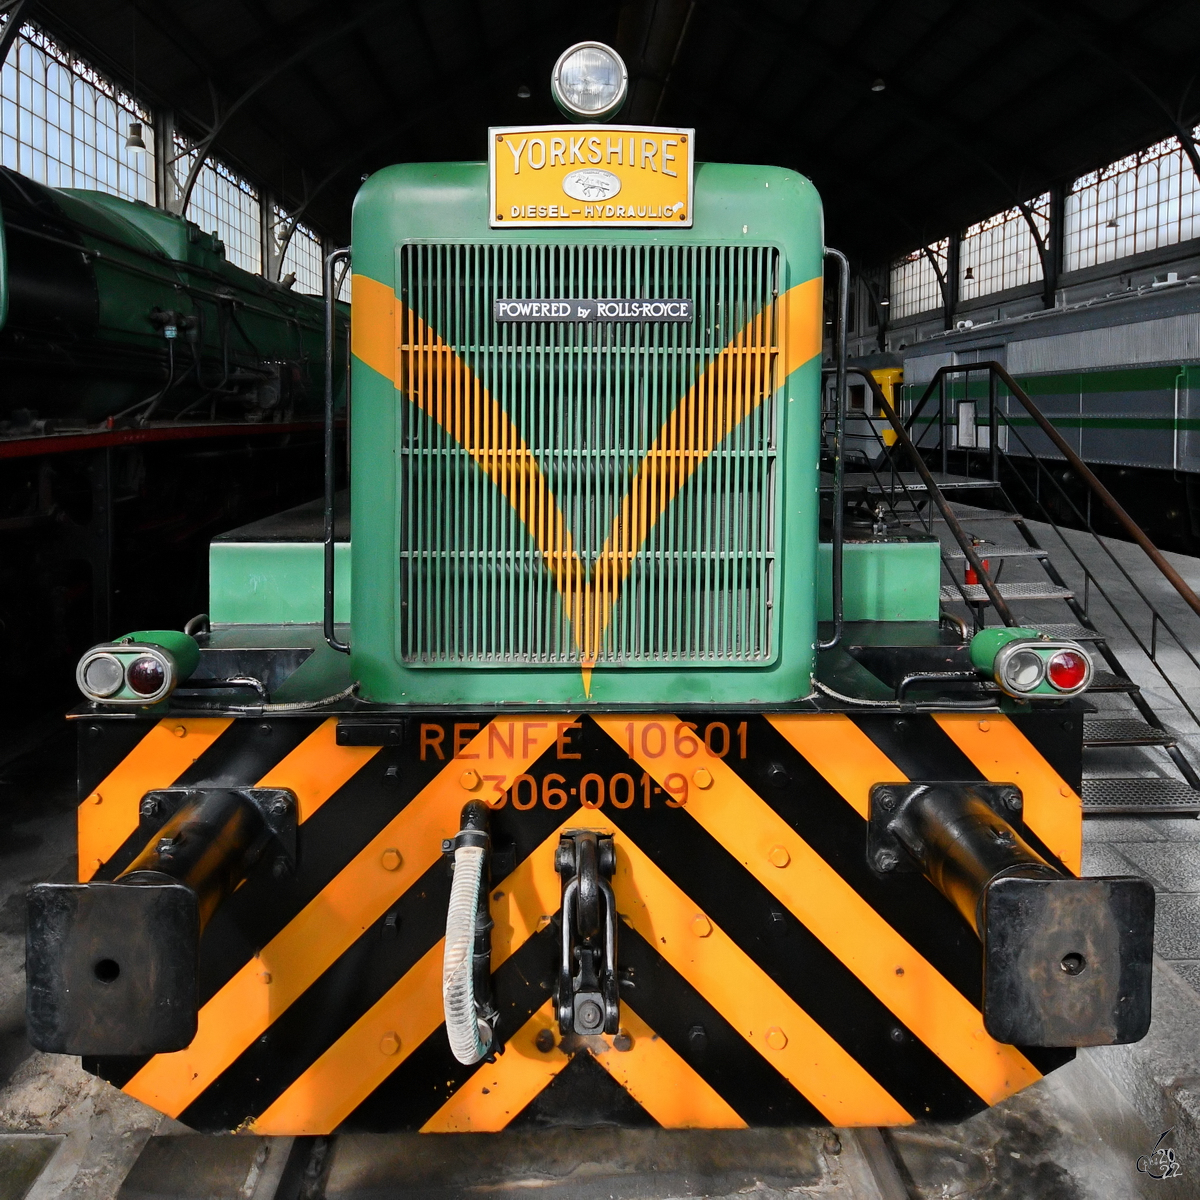 Die Diesellokomotive 10601 (306-001-9) stammt aus dem Jahr 1968 und wurde bei der Yorkshire Engine Company in Groß-Britannien hergestellt. (Eisenbahnmuseum Madrid, November 2022)